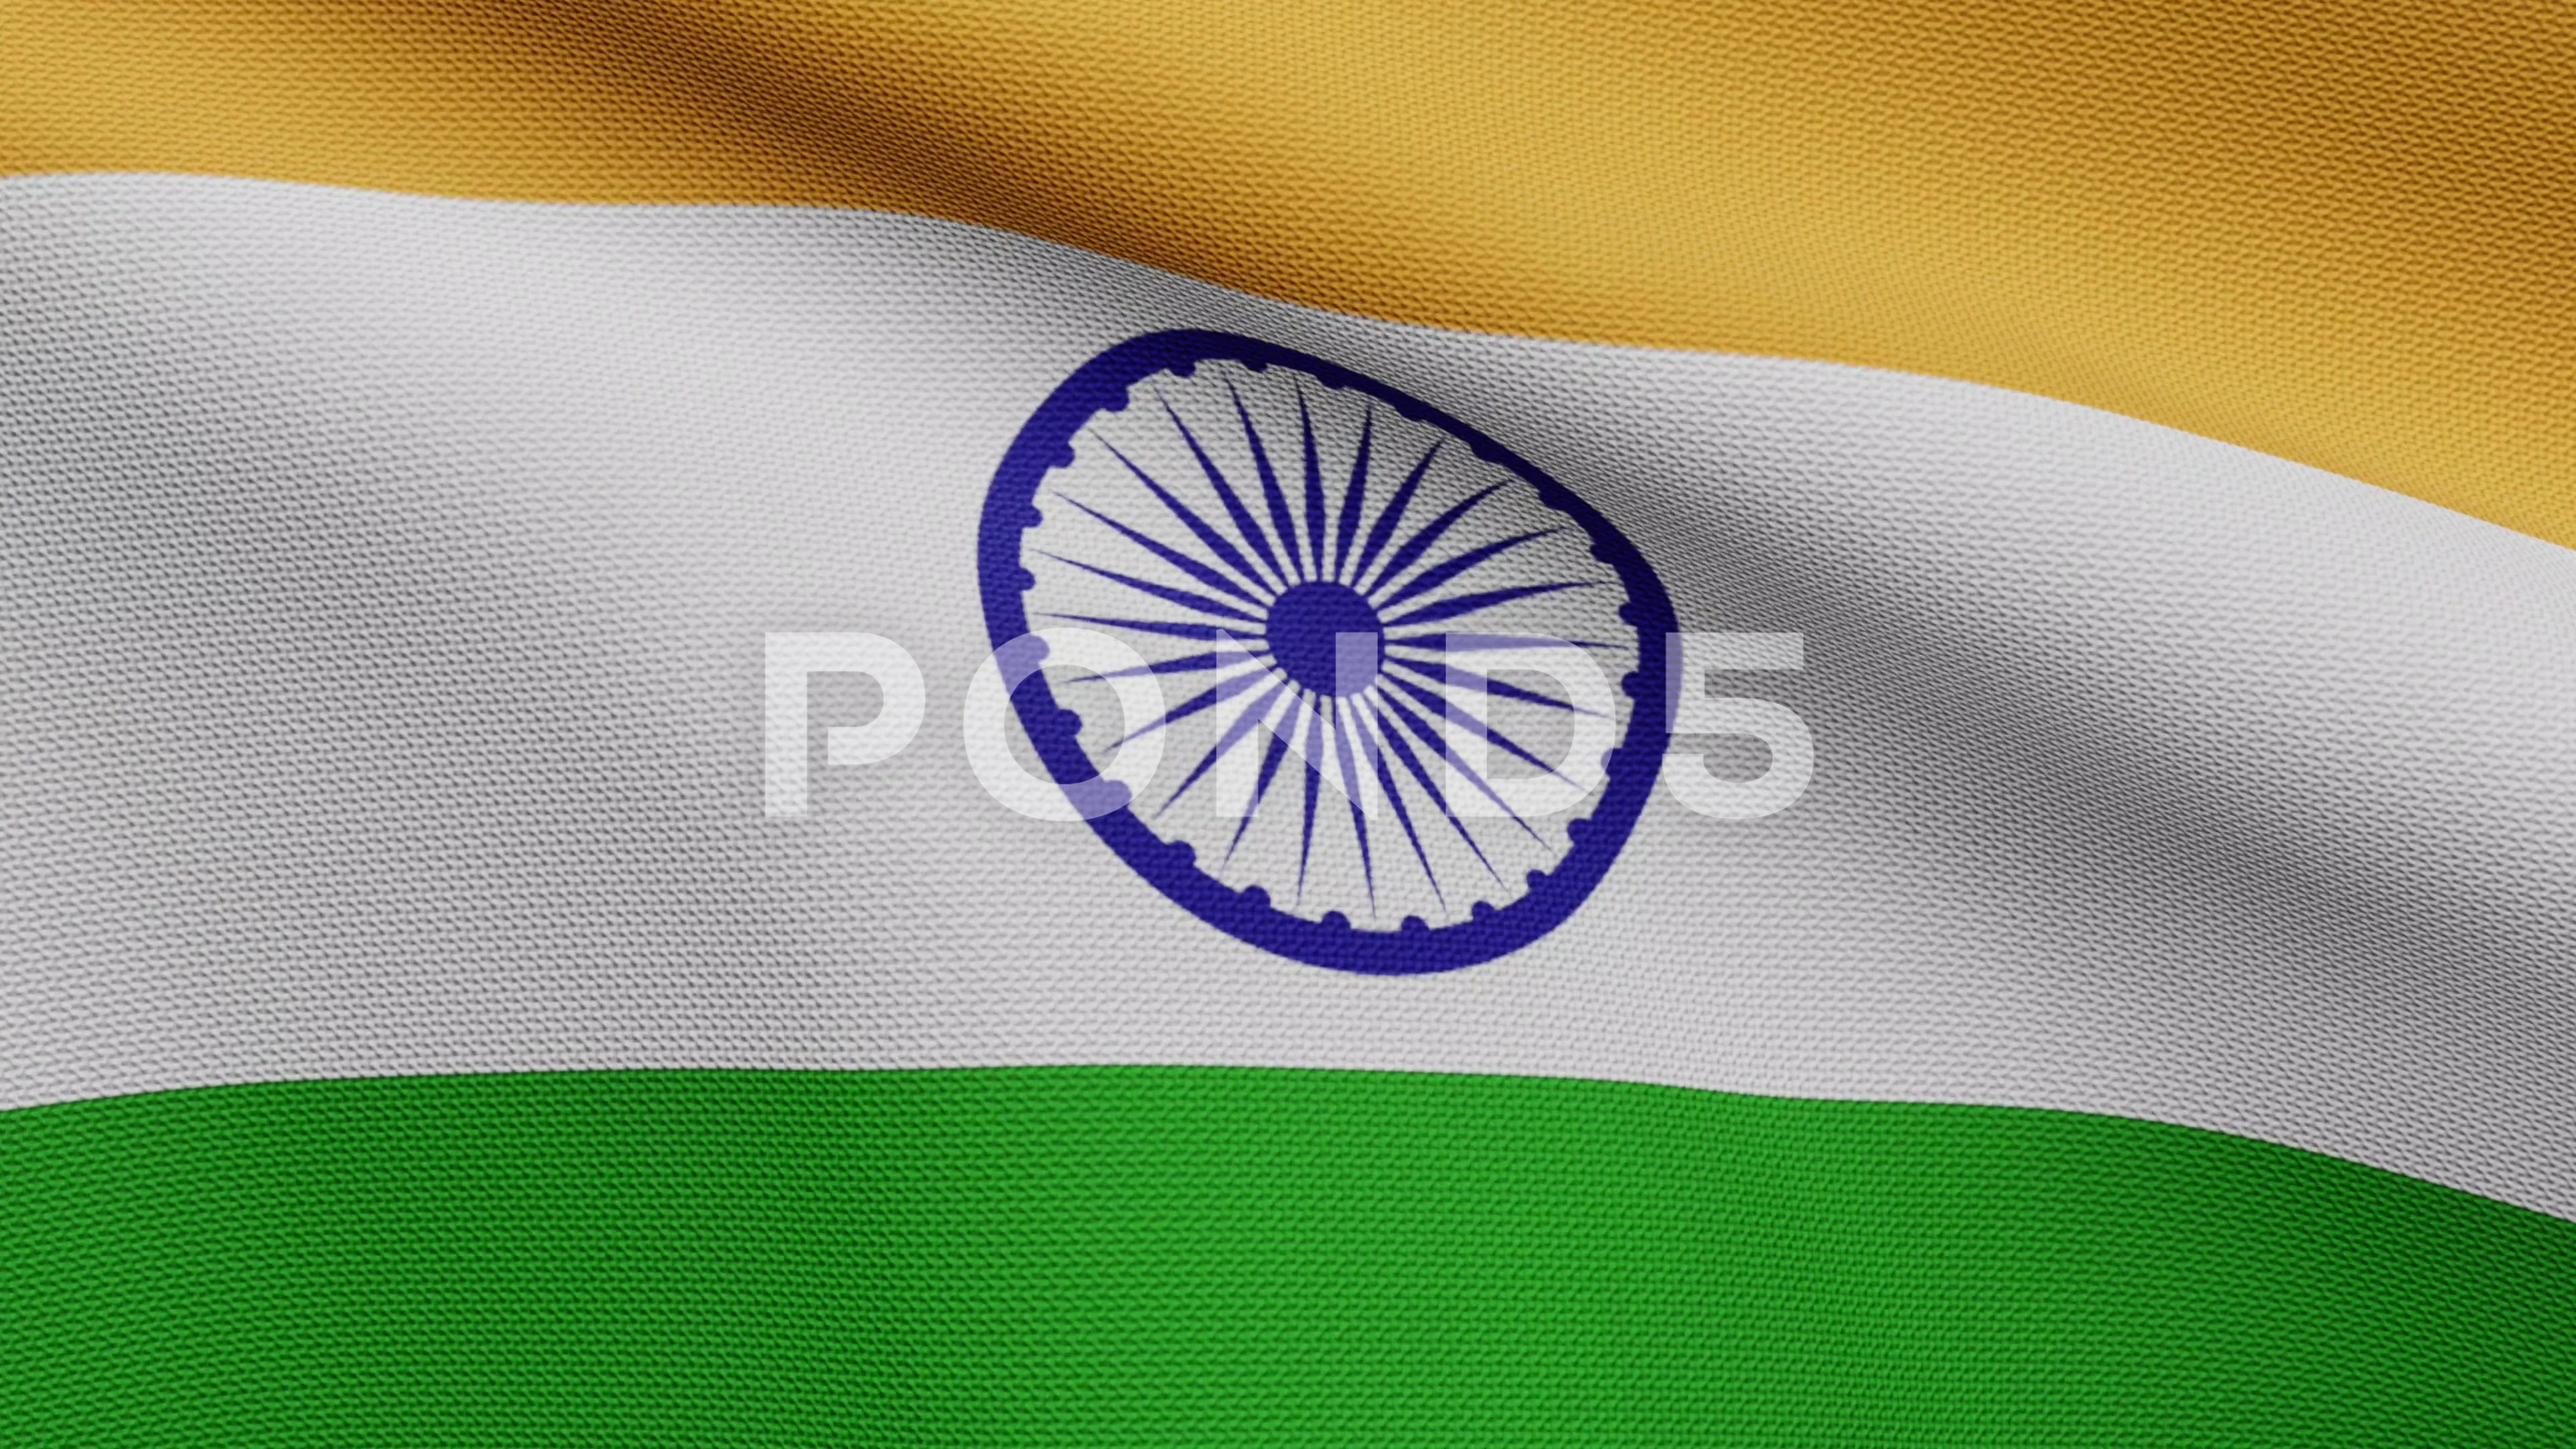 Cờ Ấn Độ 3D wave trên gió - Nhìn thấy cờ Ấn Độ tung bay trên gió thật tuyệt vời và cảm giác tự hào về quốc gia này cũng chạm đến đỉnh điểm. Với công nghệ 3D, hình ảnh cờ Ấn Độ trông rất sống động và cực kỳ mãn nhãn. Hãy xem ngay những hình ảnh này để trải nghiệm khung cảnh tuyệt vời này!